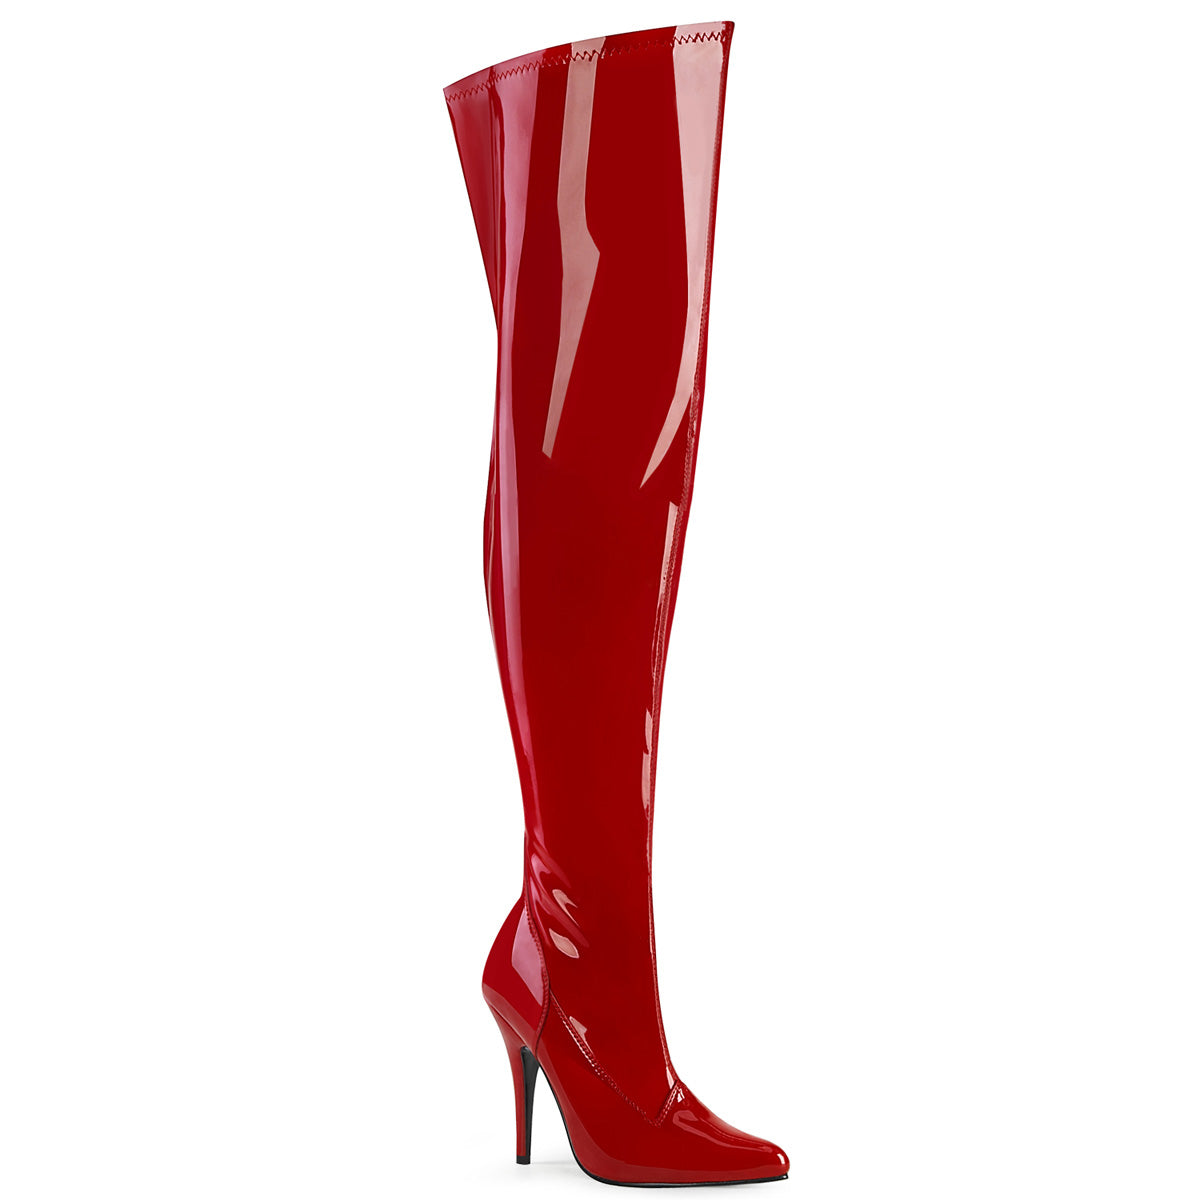 SEDUCE-3000WC Pleaser Large Size Ladies Shoes 5" Heel Red Fetish Footwear